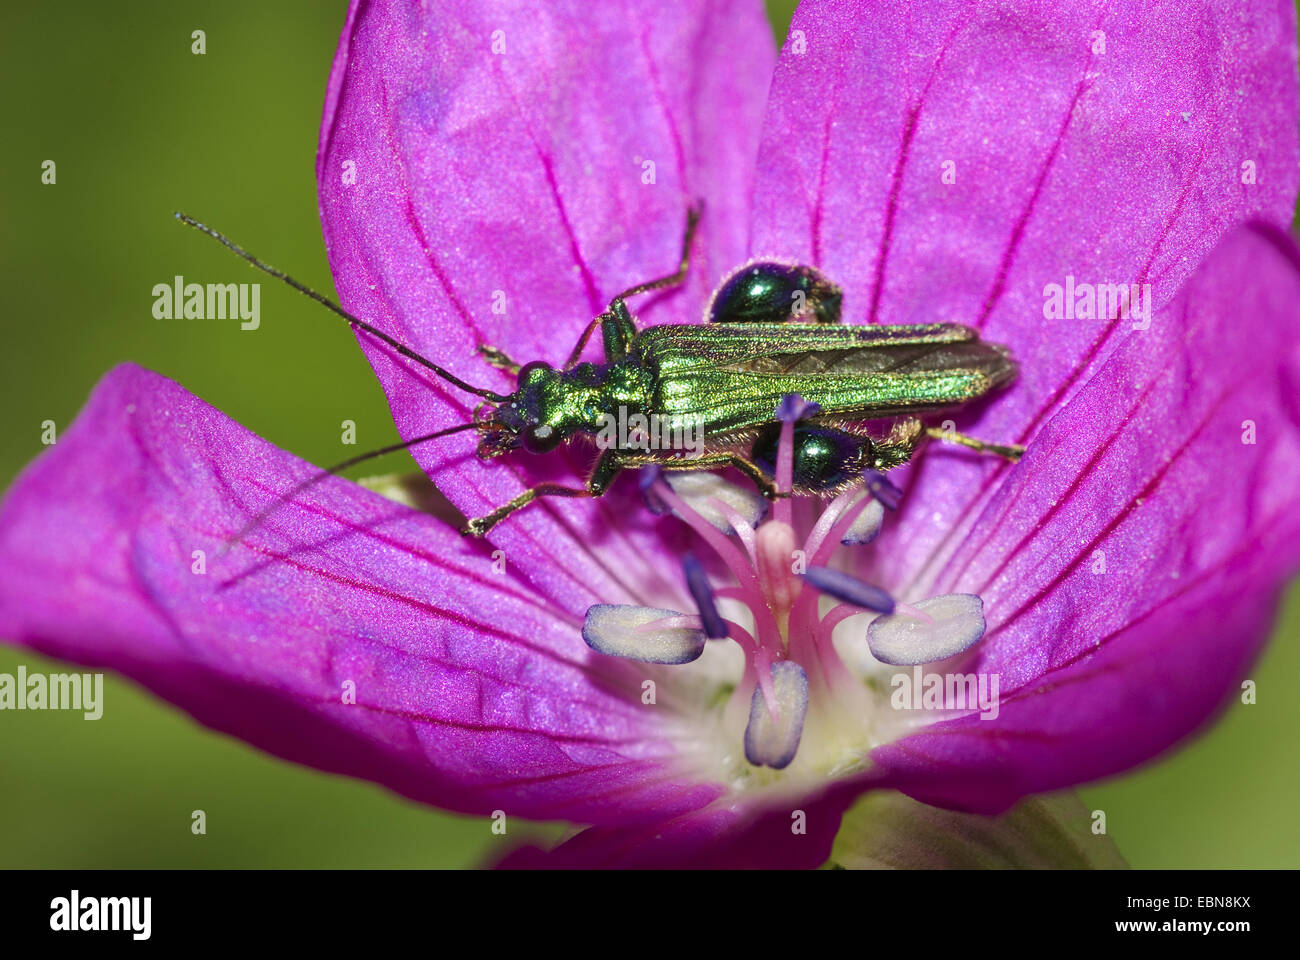 Patas gruesas flor escarabajo (Oedemera nobilis), sobre una flor, Alemania, Hesse. Foto de stock